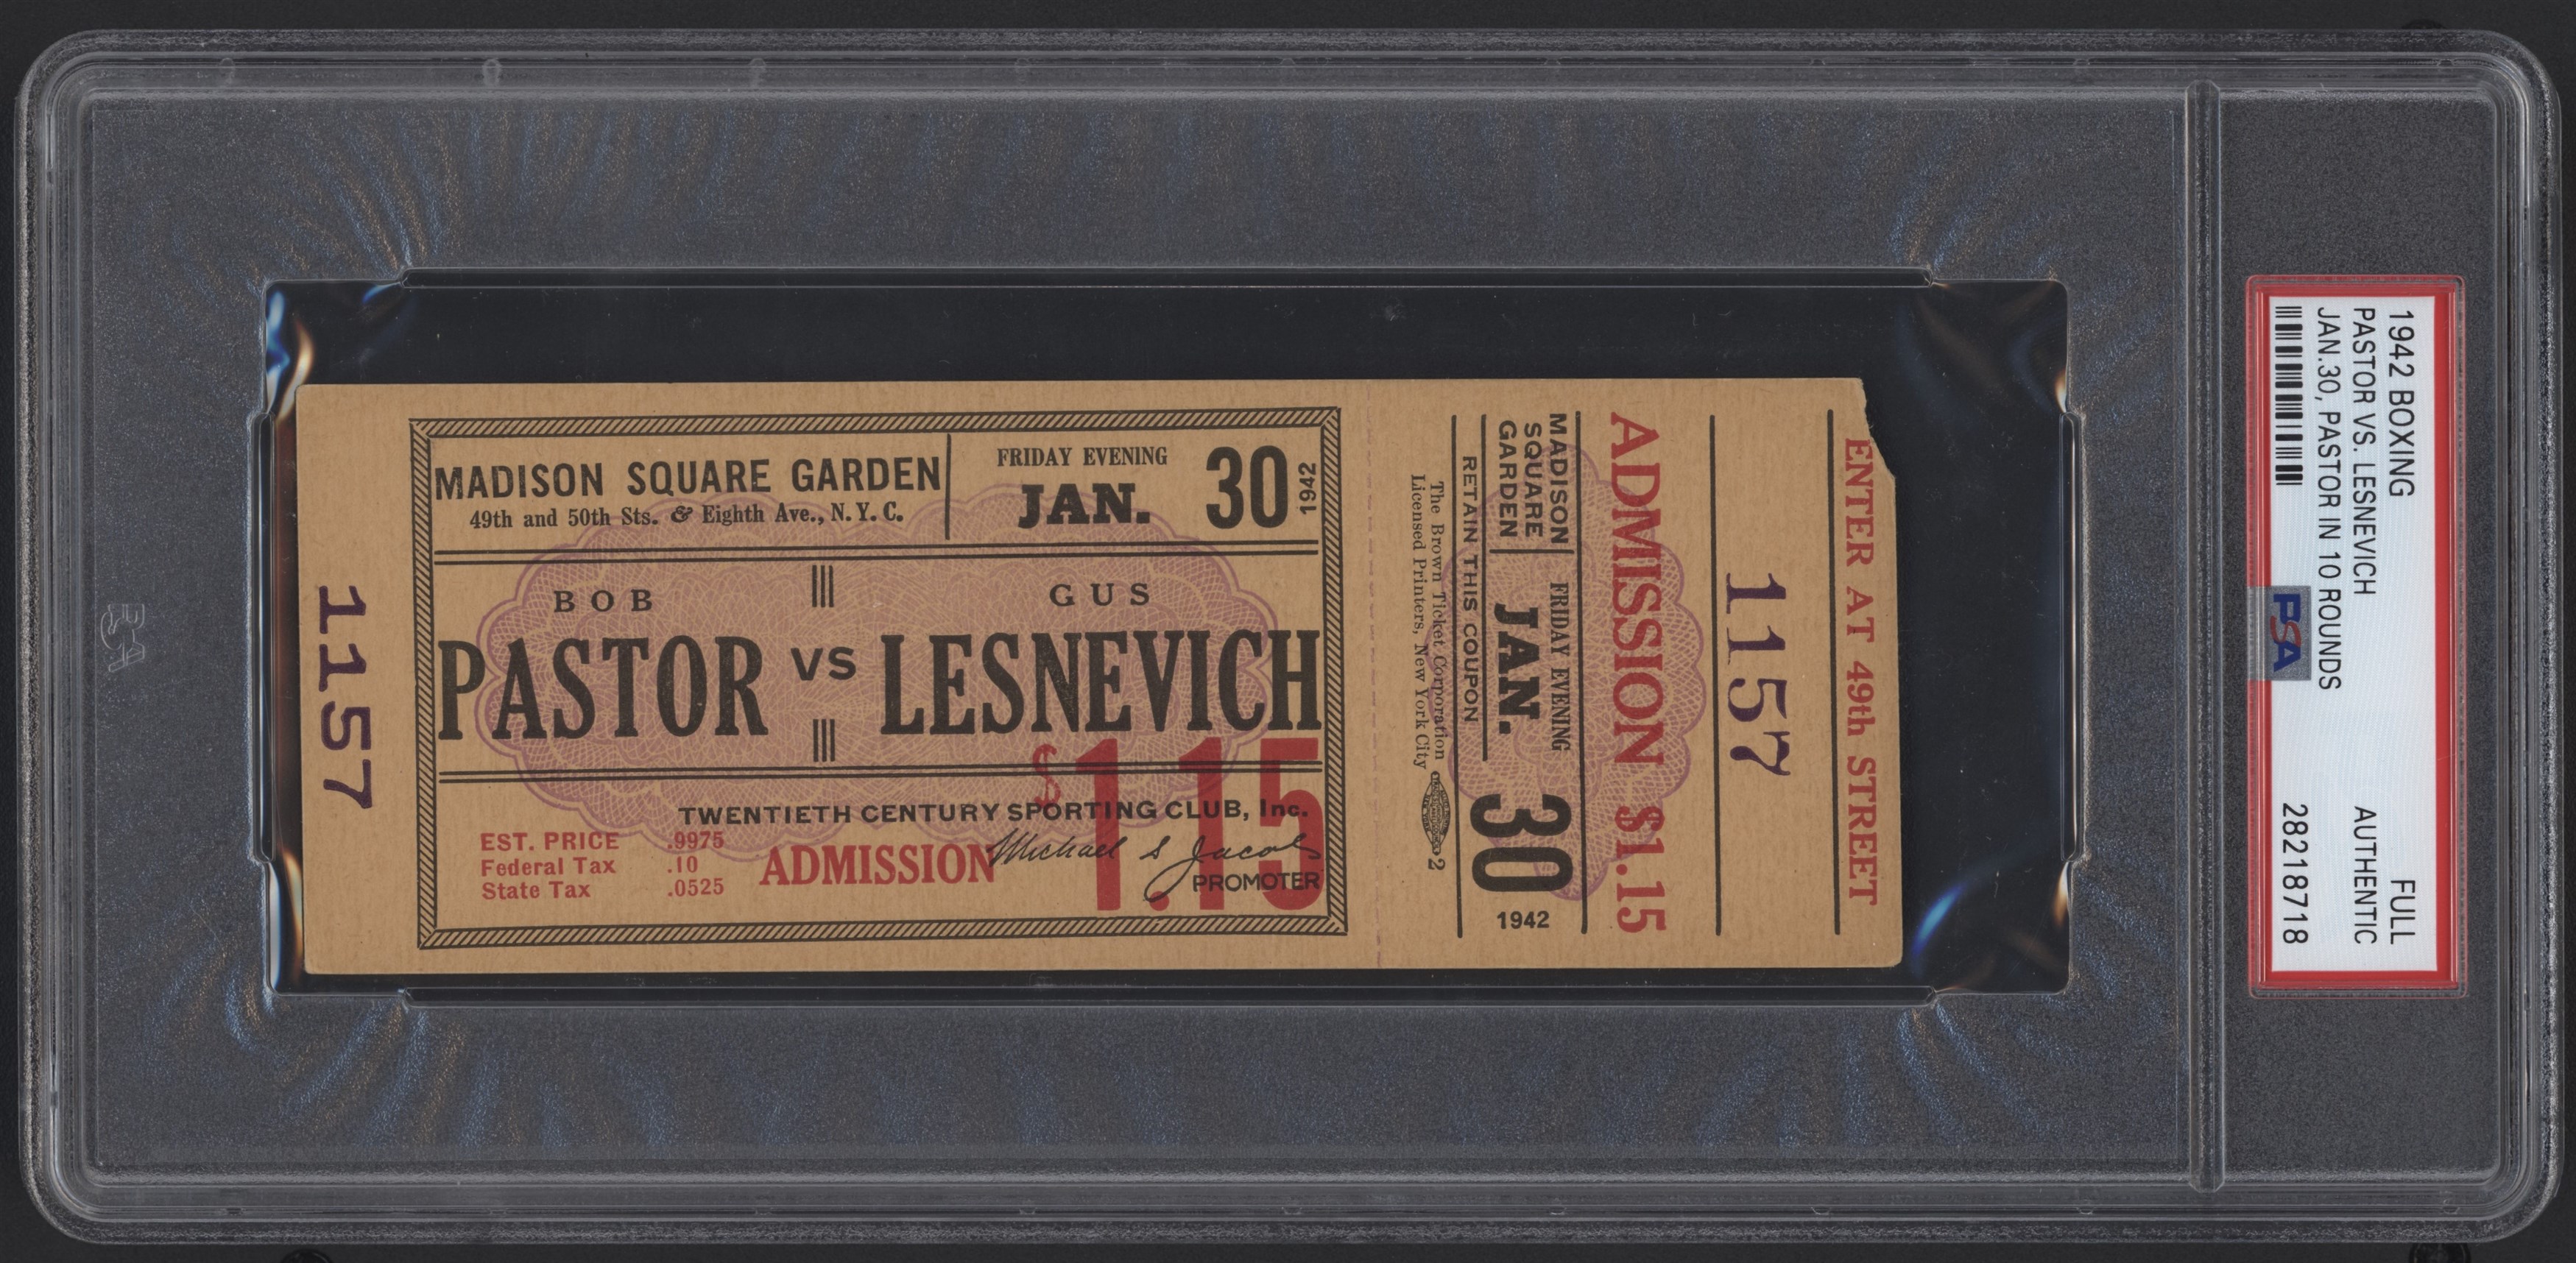 Tickets - Bob Pastor vs. Gus Lesnevich 1942 Fight Full Ticket